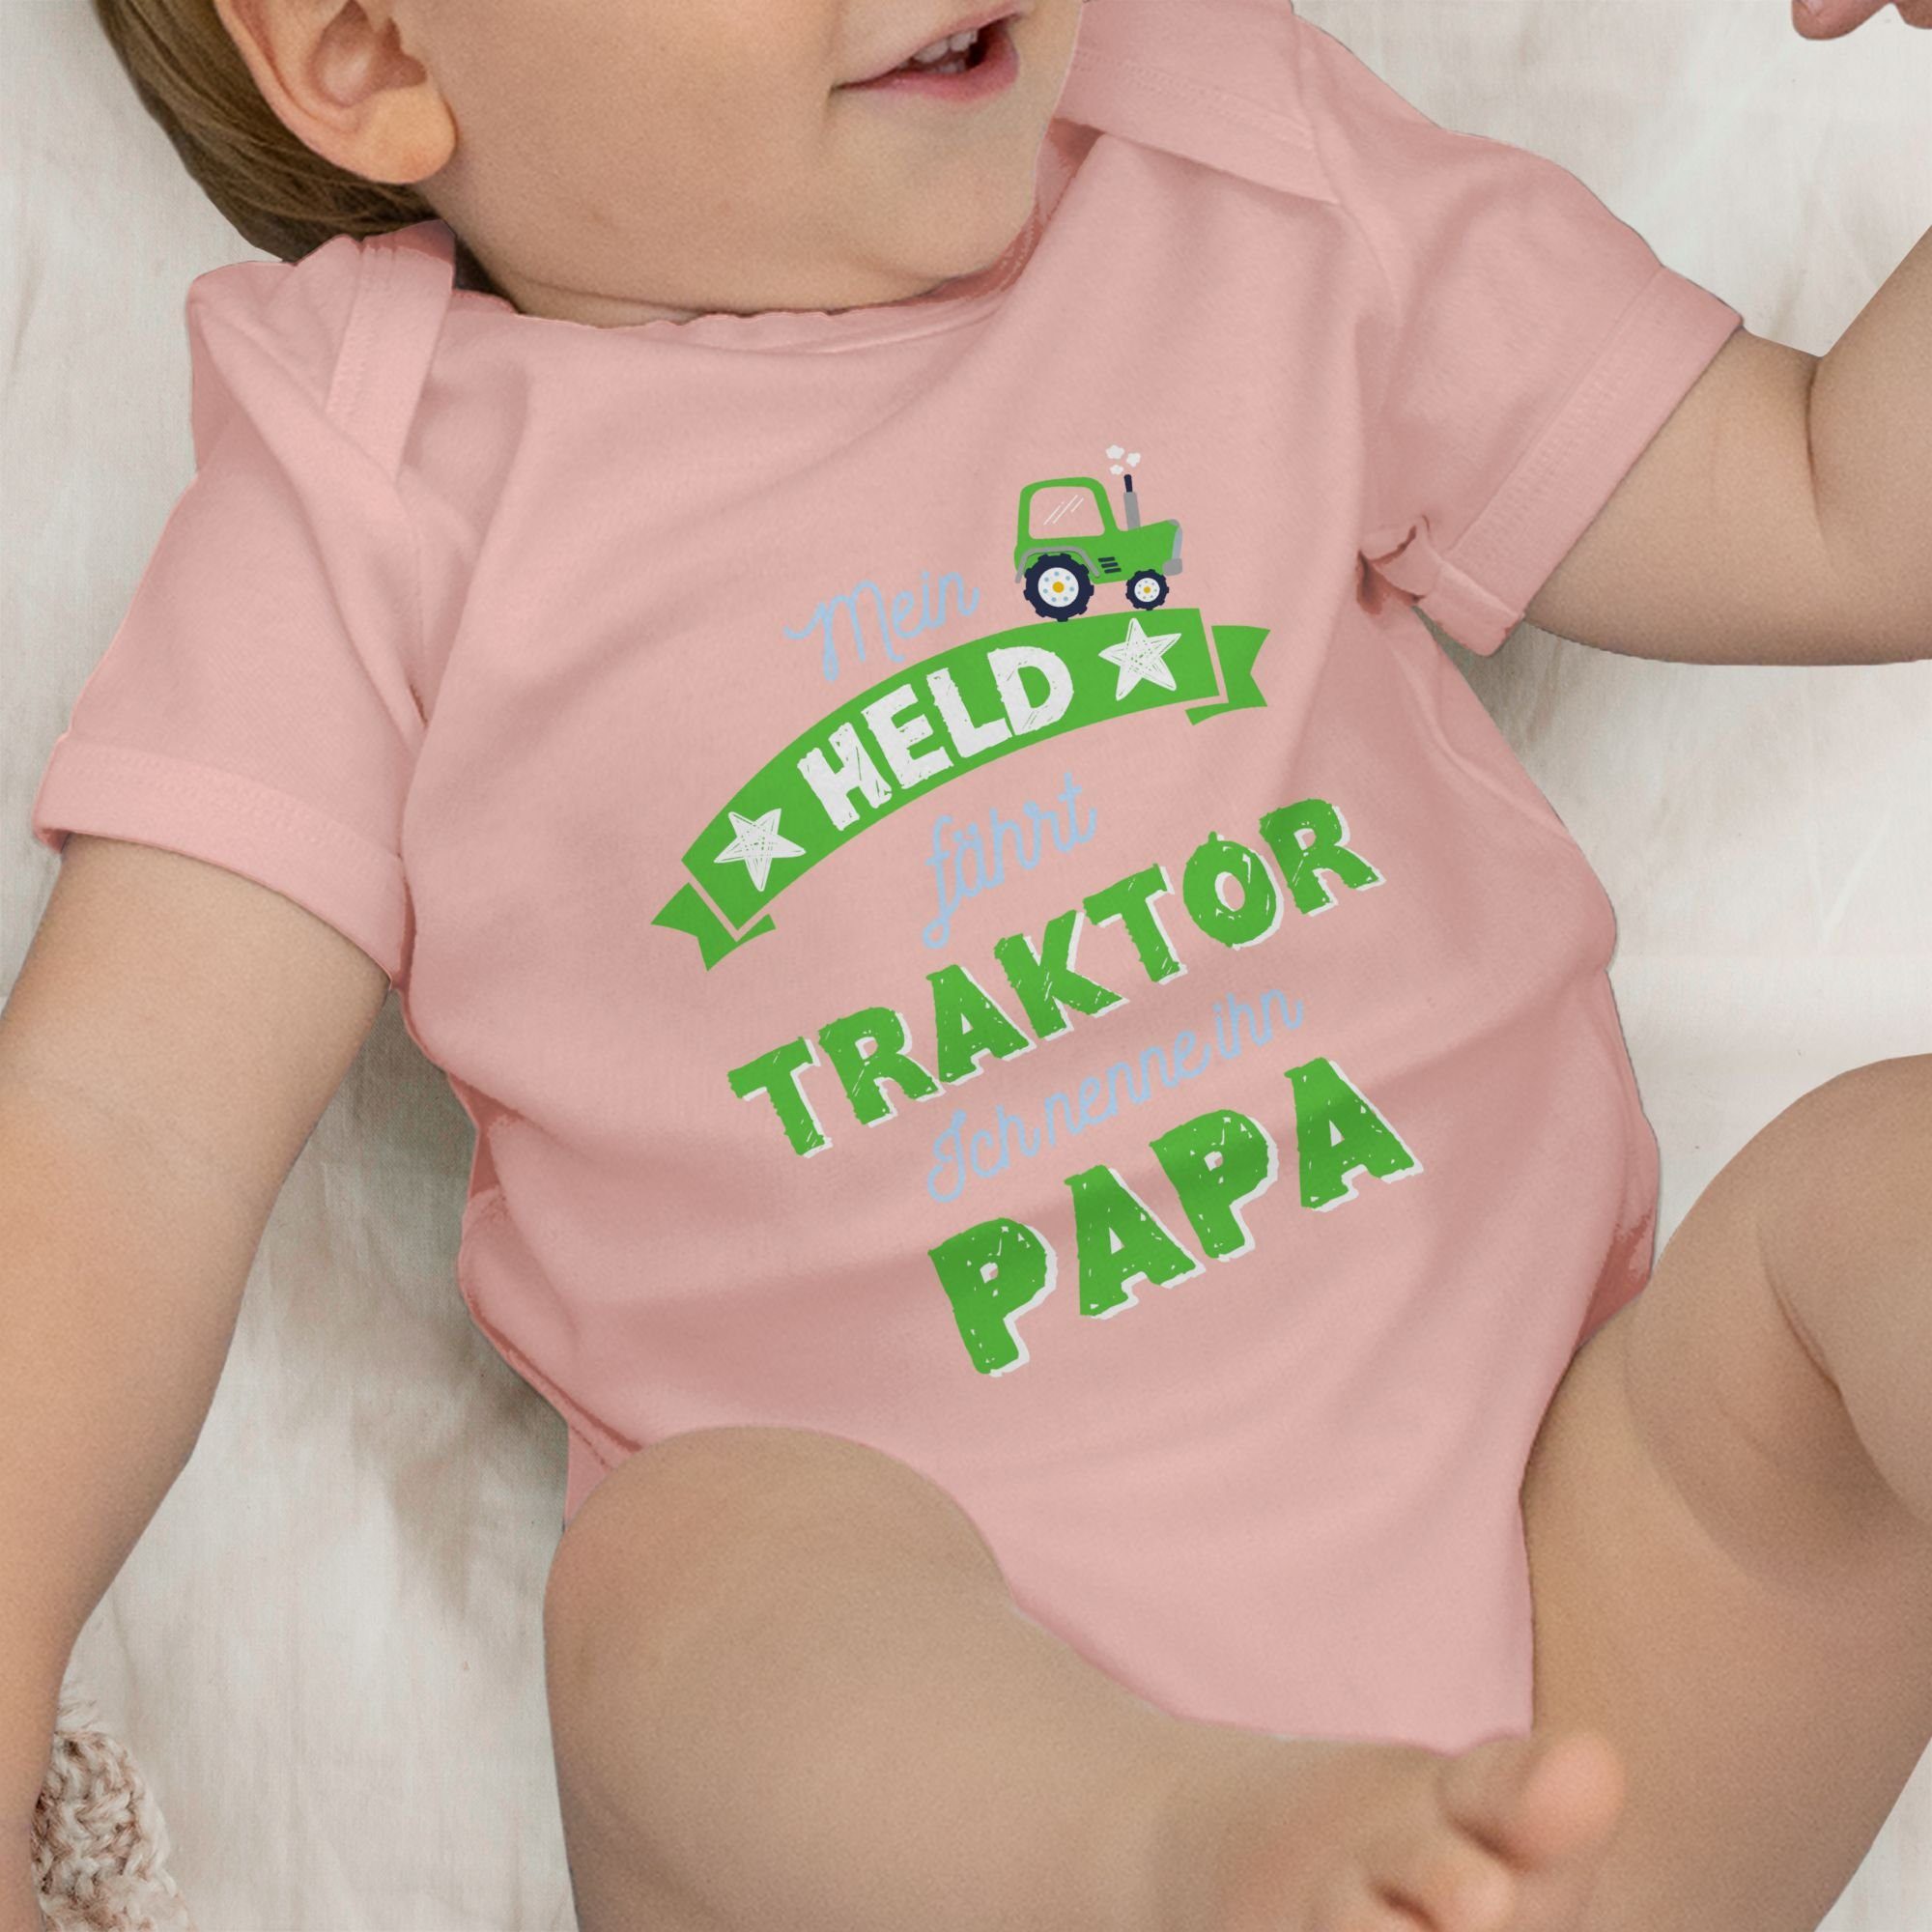 Shirtracer Shirtbody Mein Held fährt Babyrosa Traktor Papa Baby 3 Vatertag Geschenk